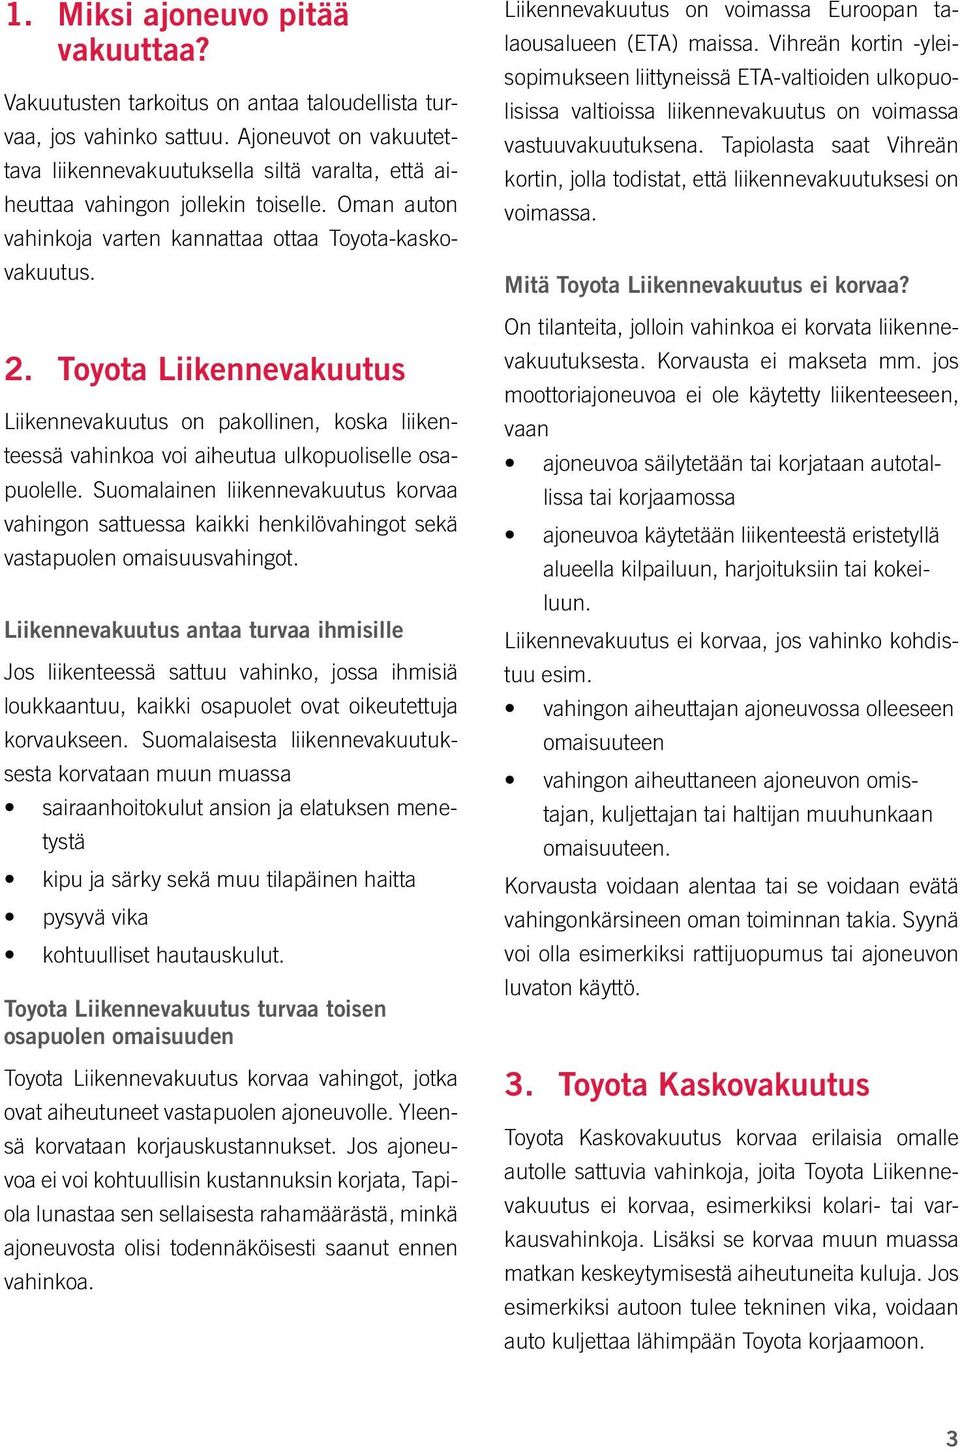 Toyota Liikennevakuutus Liikennevakuutus on pakollinen, koska liikenteessä vahinkoa voi aiheutua ulkopuoliselle osapuolelle.